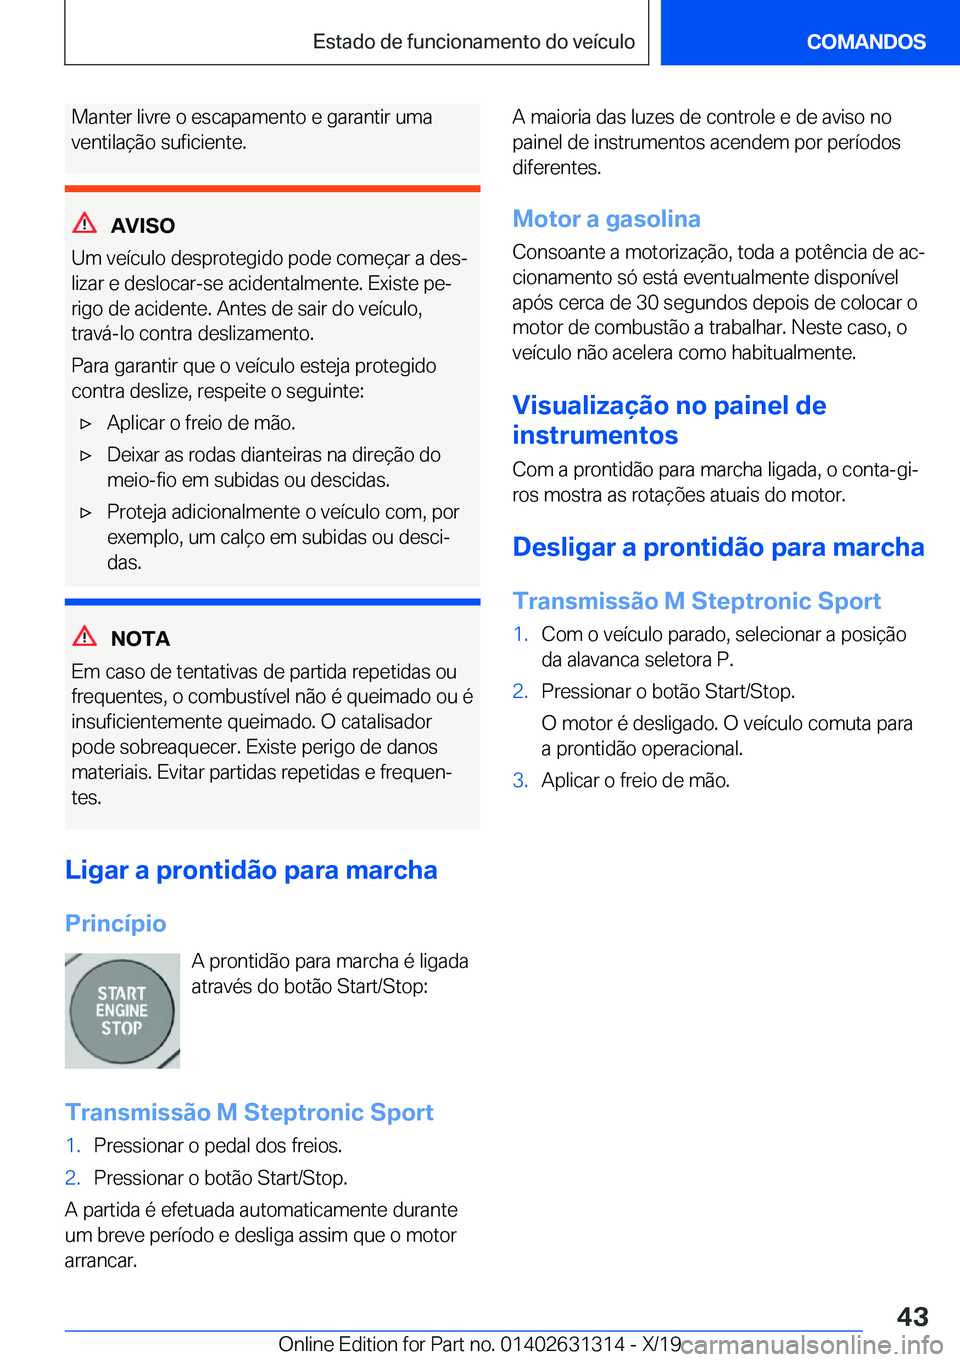 BMW M8 2020  Manual do condutor (in Portuguese) �M�a�n�t�e�r��l�i�v�r�e��o��e�s�c�a�p�a�m�e�n�t�o��e��g�a�r�a�n�t�i�r��u�m�a
�v�e�n�t�i�l�a�